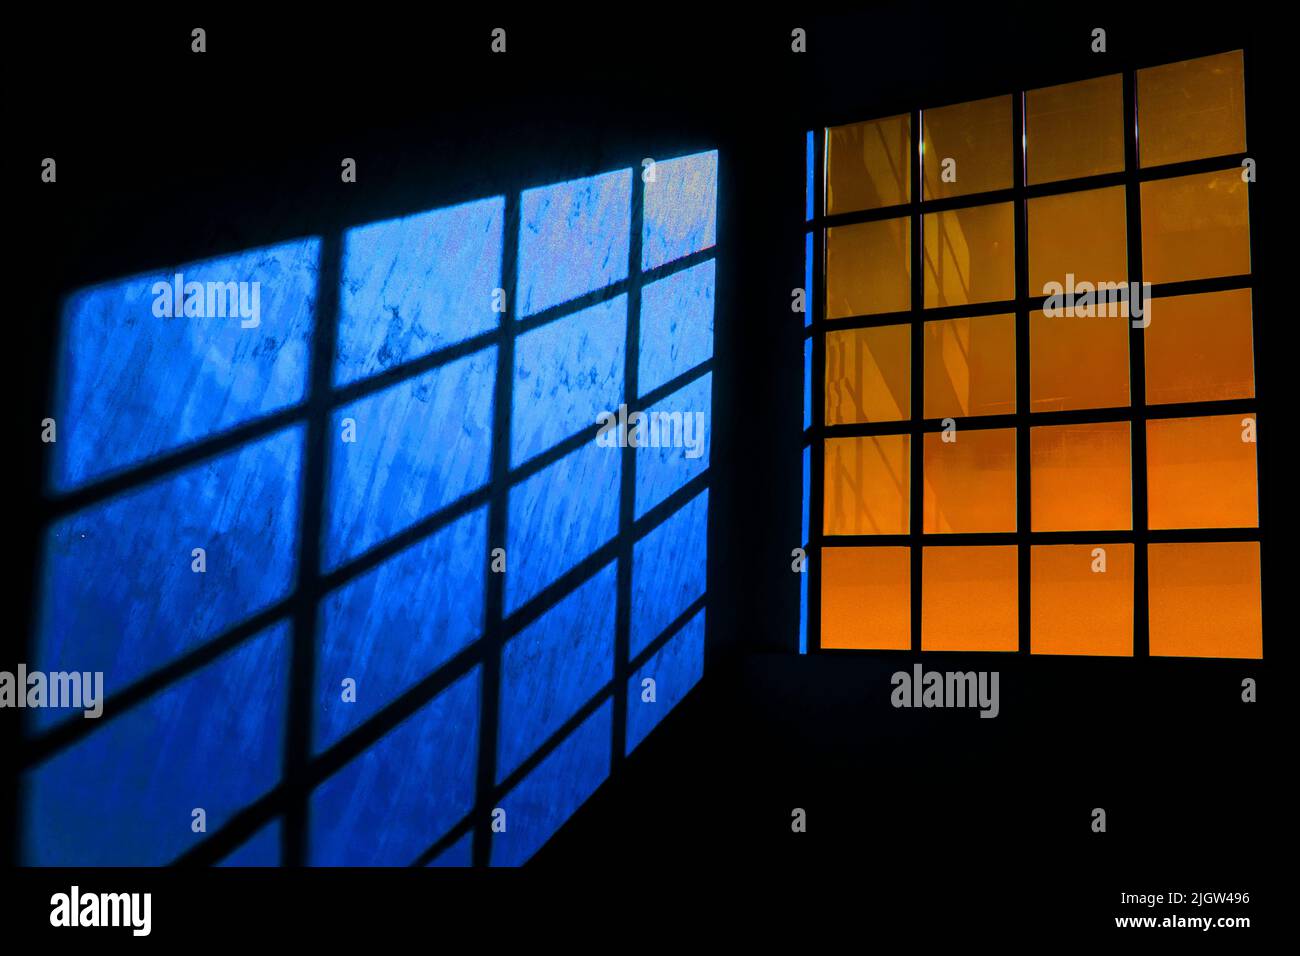 Immagine di una grande finestra di colore arancione con un meraviglioso riflesso di ombre (luci e ombre) questa opera d'arte è adatta come sfondo per telefoni o f Foto Stock